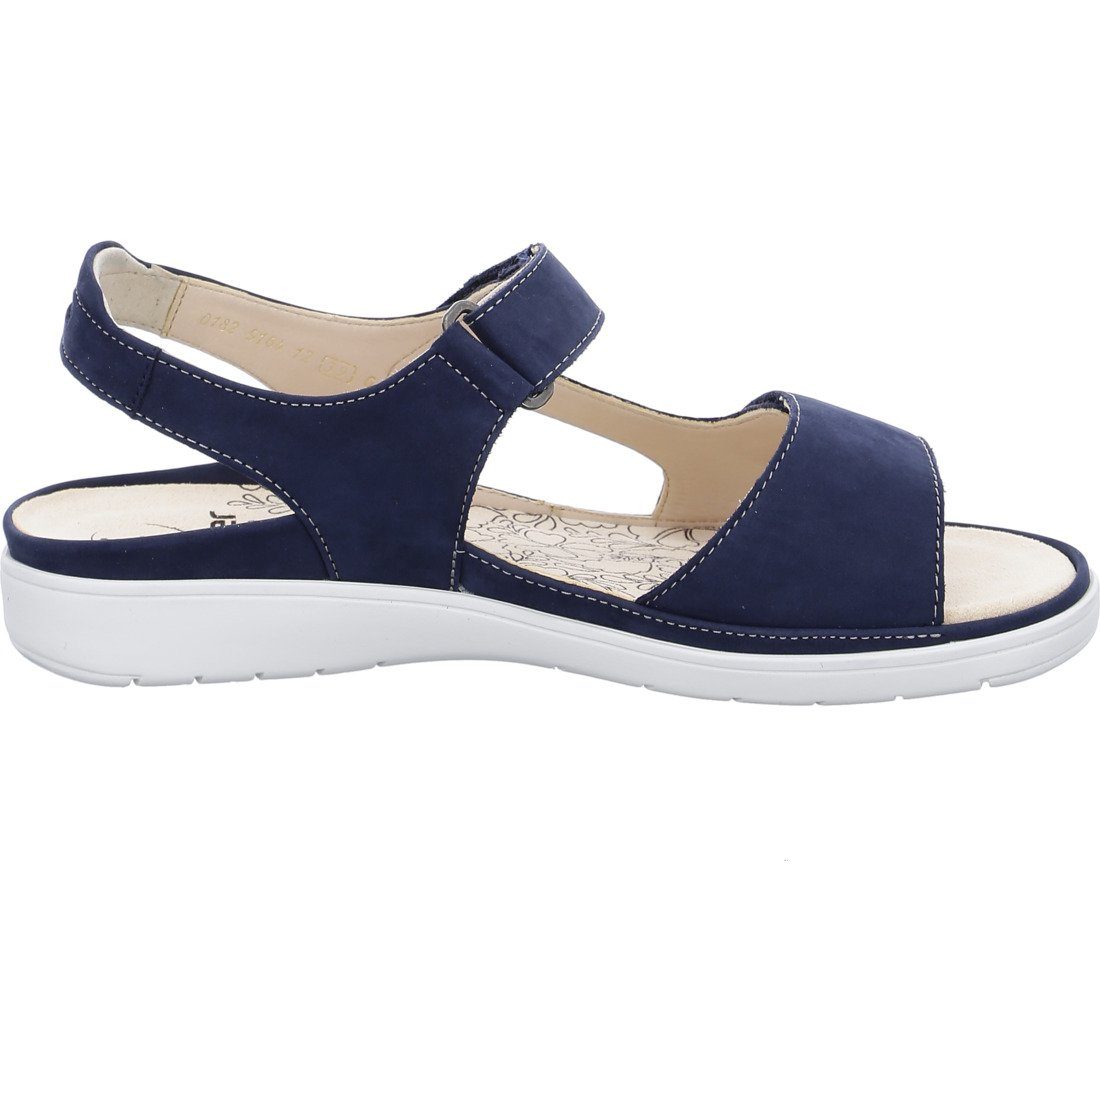 Ganter Gina 045854 blau Ganter - Damen Sandalette Nubuk Sandalette Schuhe,